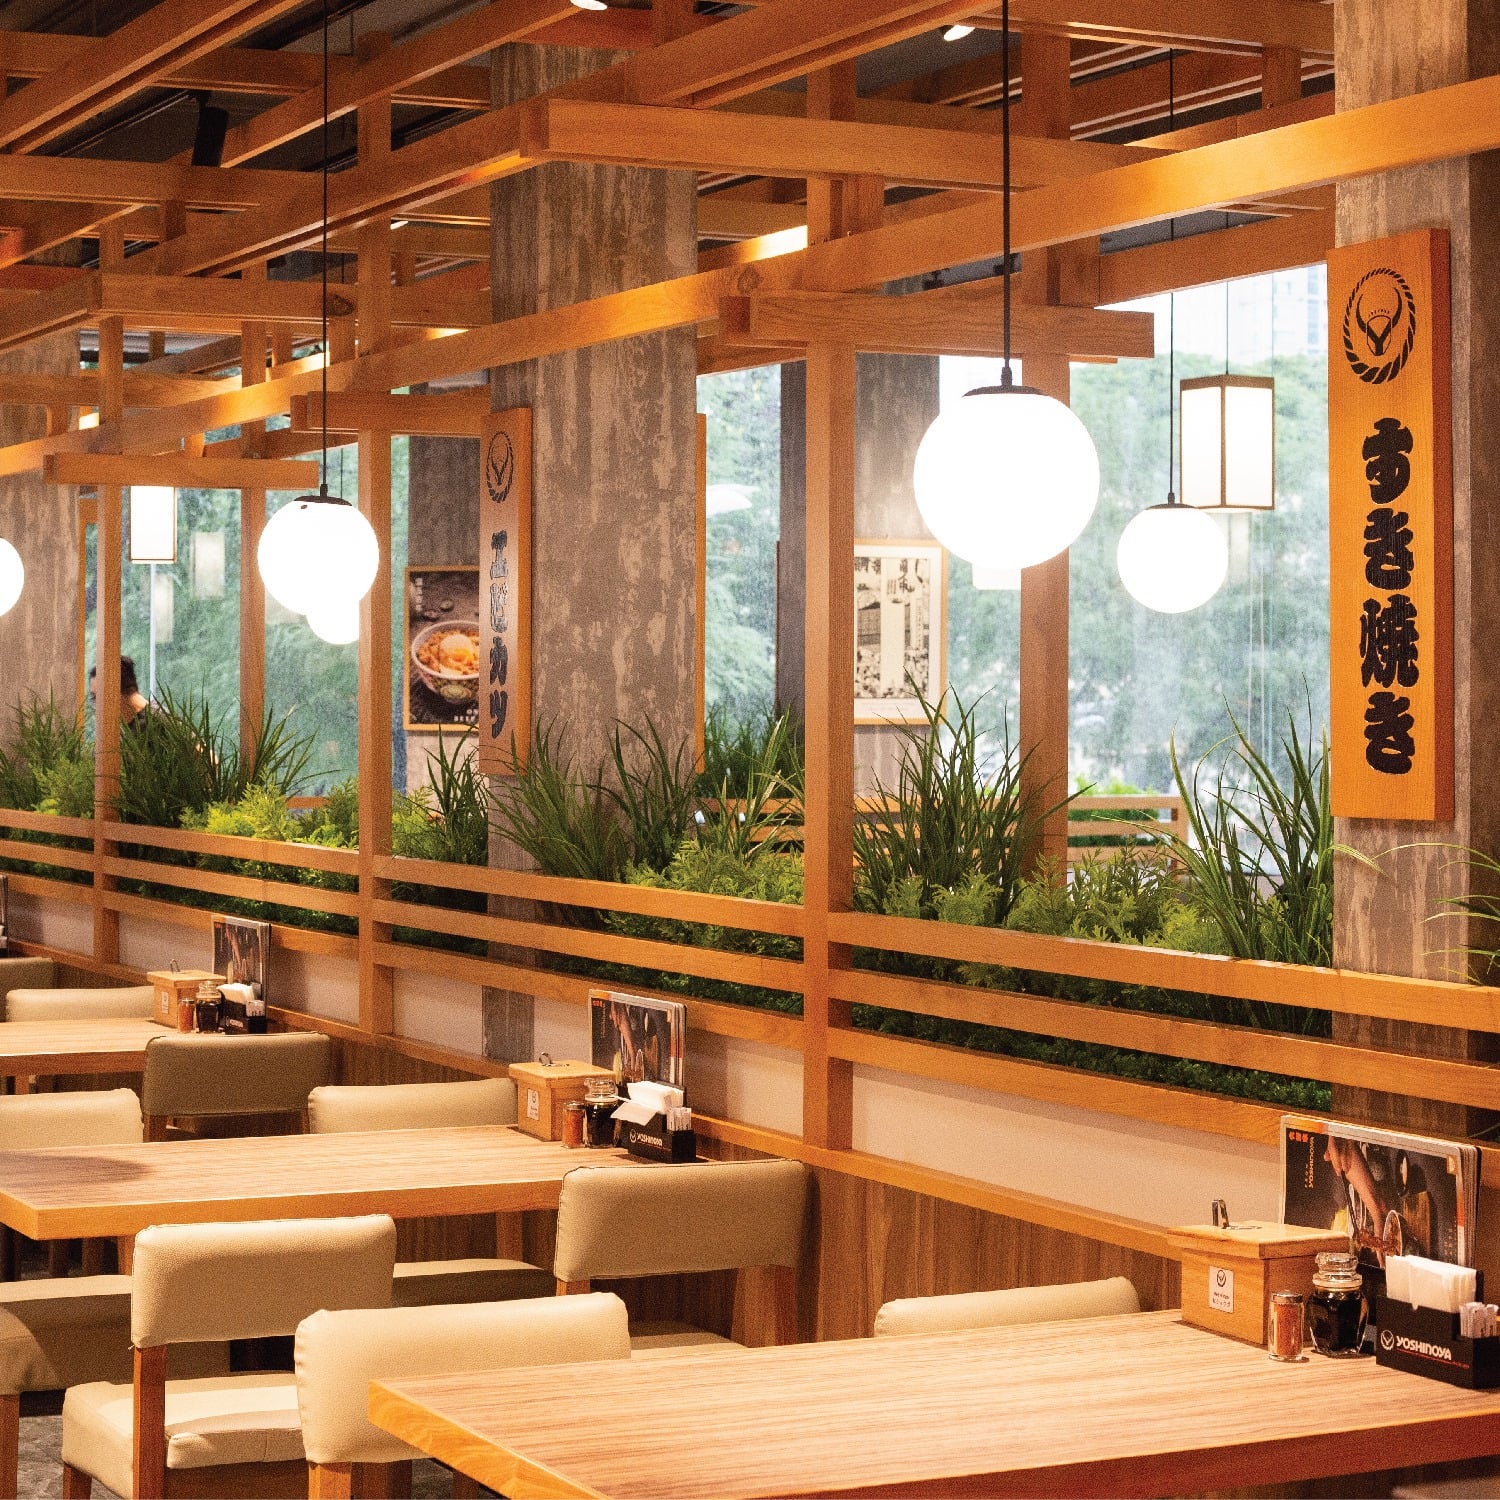 Nhà hàng Yoshinoya đã xuất hiện ở Sài Gòn giúp các tín đồ ẩm thực Nhật Bản có thêm nhiều lựa chọn.